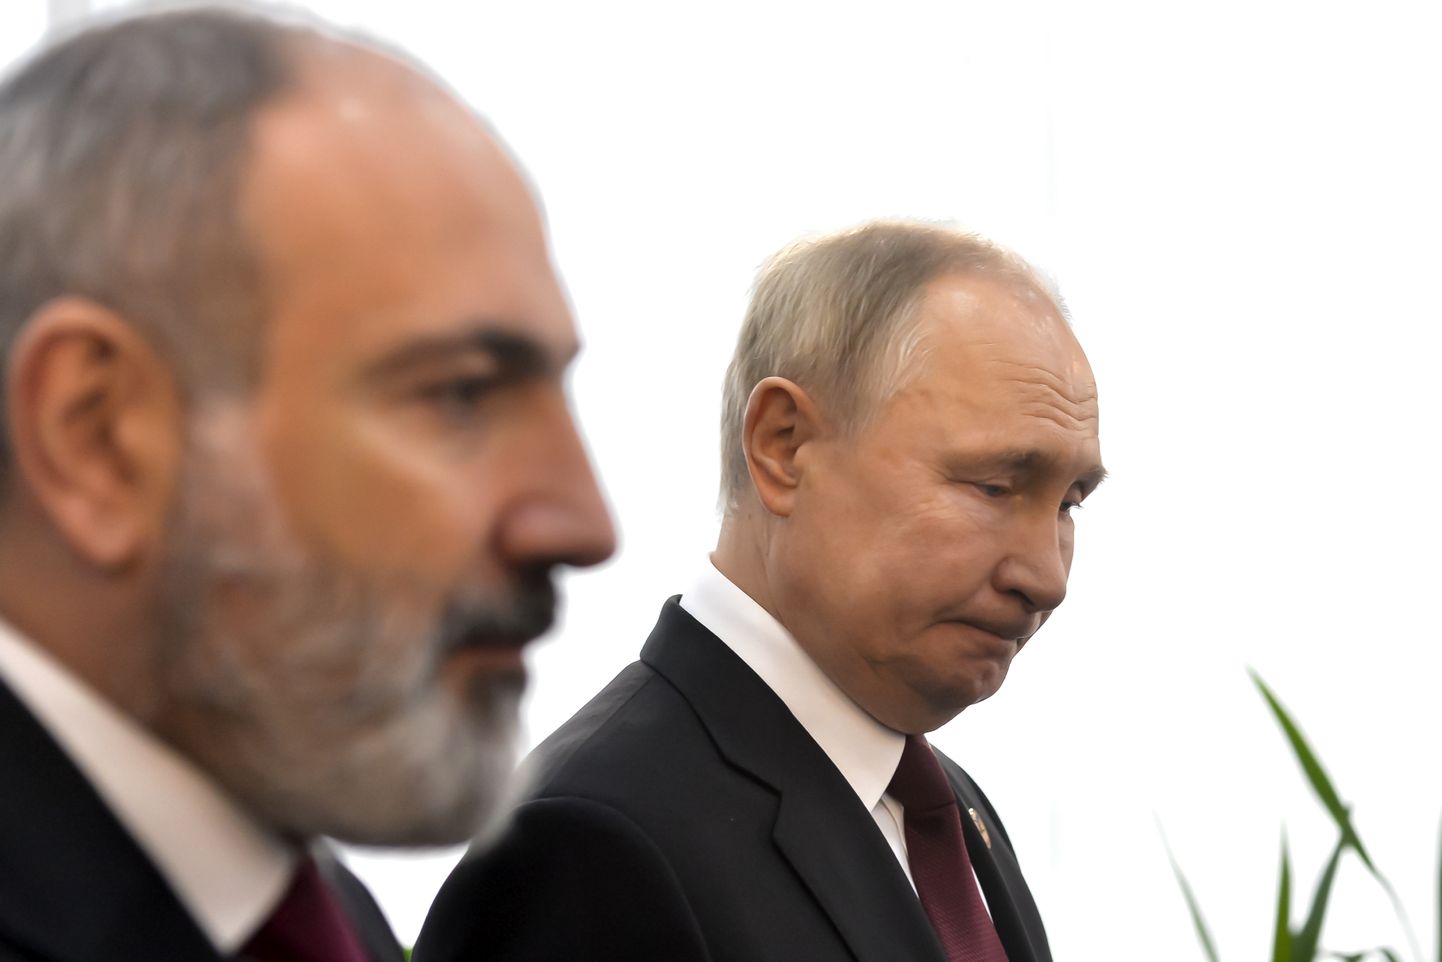 Armeenia peaminister Nikol Pashinyan ja Venemaa president Vladimir Putin täna Euraasia majandusühenduse kokkusaamisel.